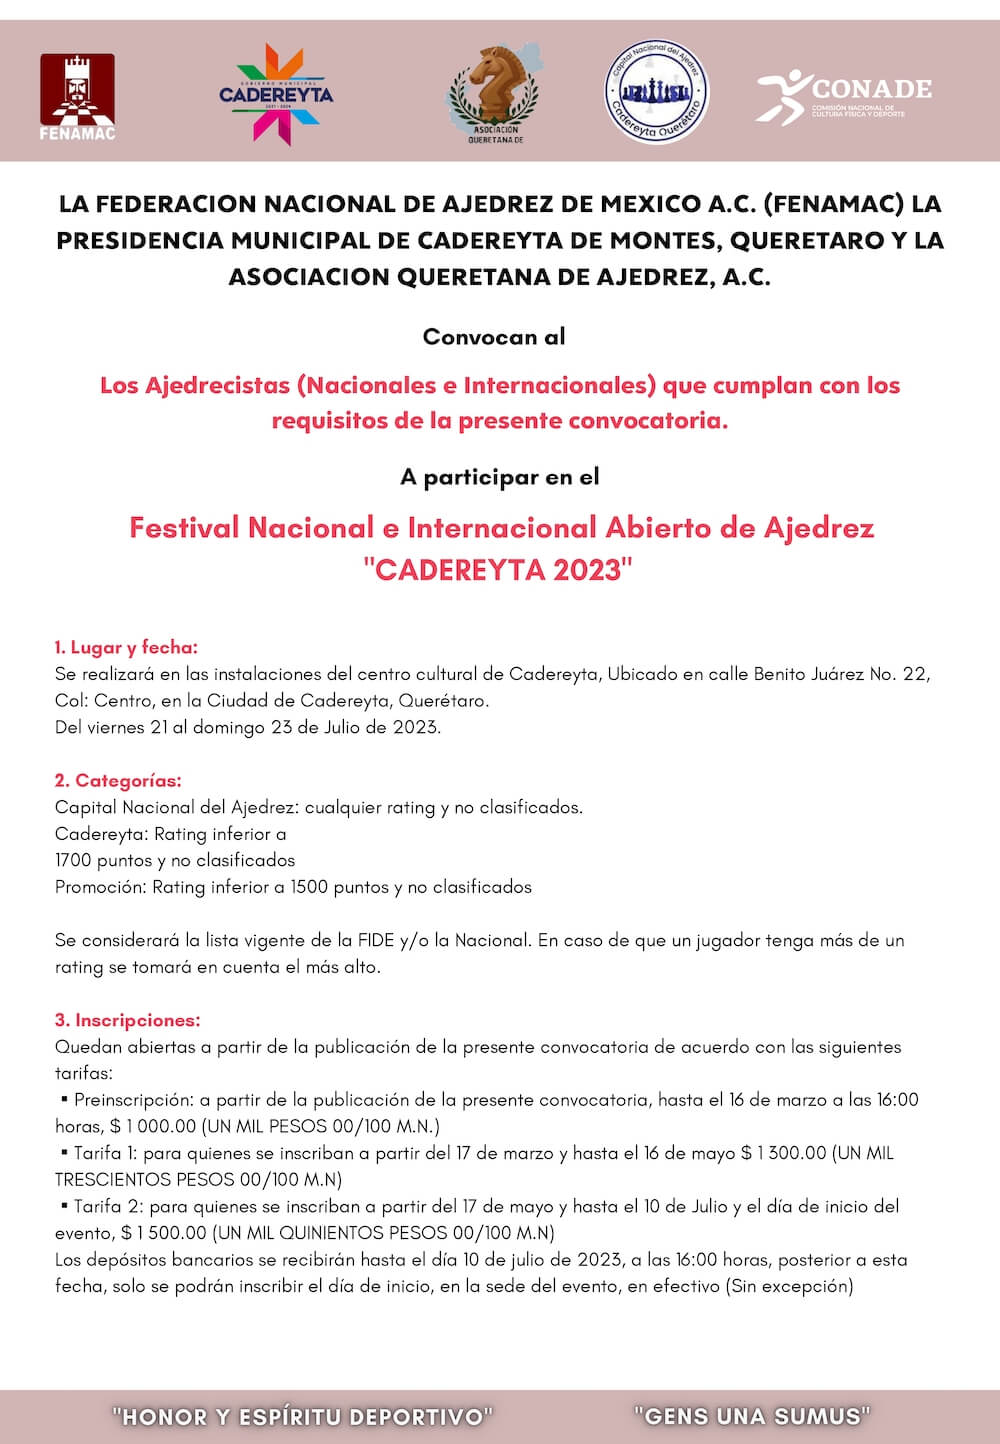 Convocatorio de  Festival Nacional e Internacional Abierto de Ajedrez “CADEREYTA 2023”